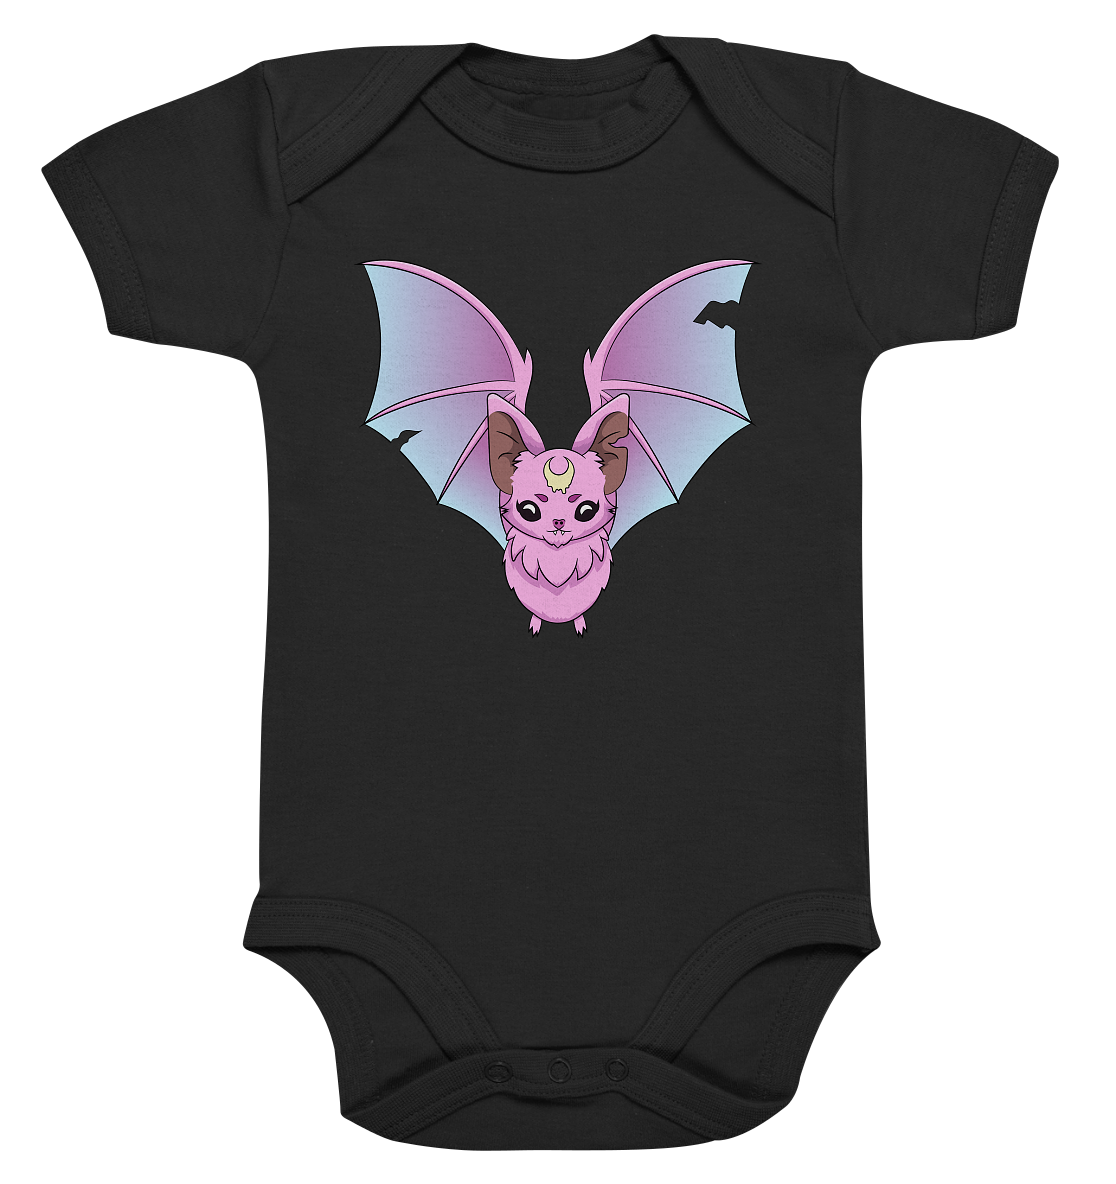 23-1149 Kawaii Pink Bat - Organic Baby Bodysuite